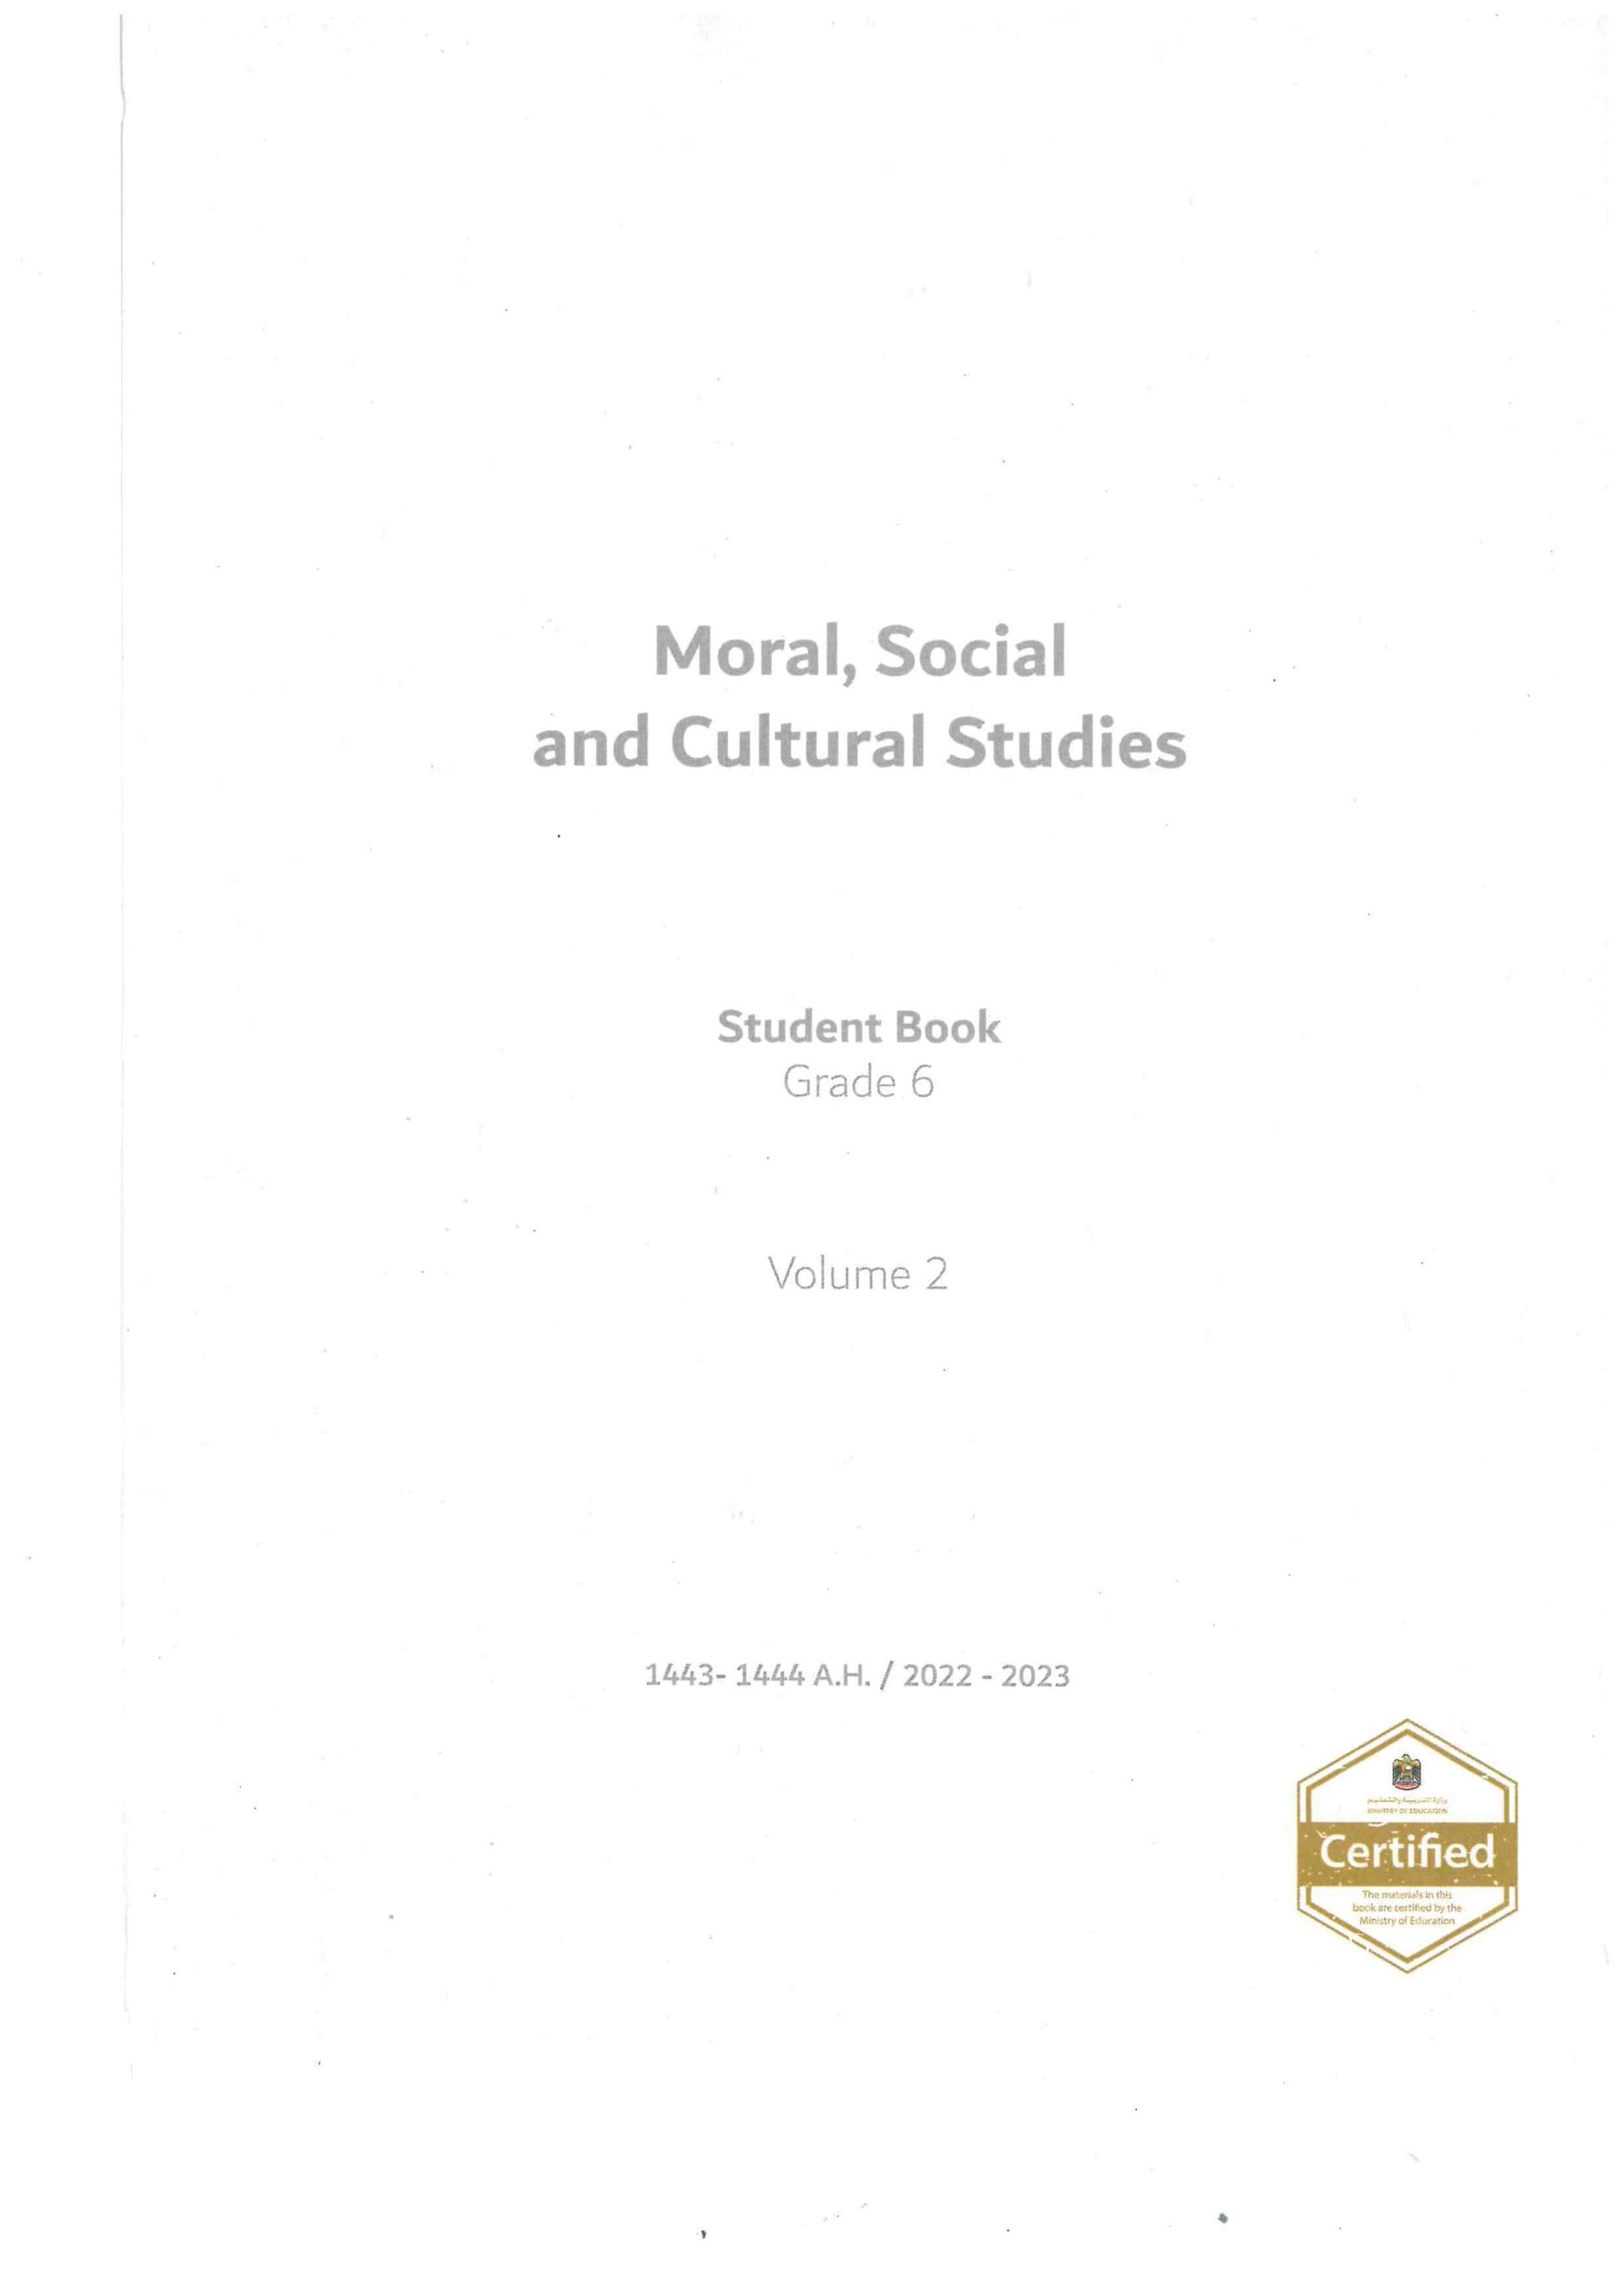 كتاب الطالب لغير الناطقين بها Moral Social & Cultural Studies الصف السادس الفصل الدراسي الثاني 2022-2023